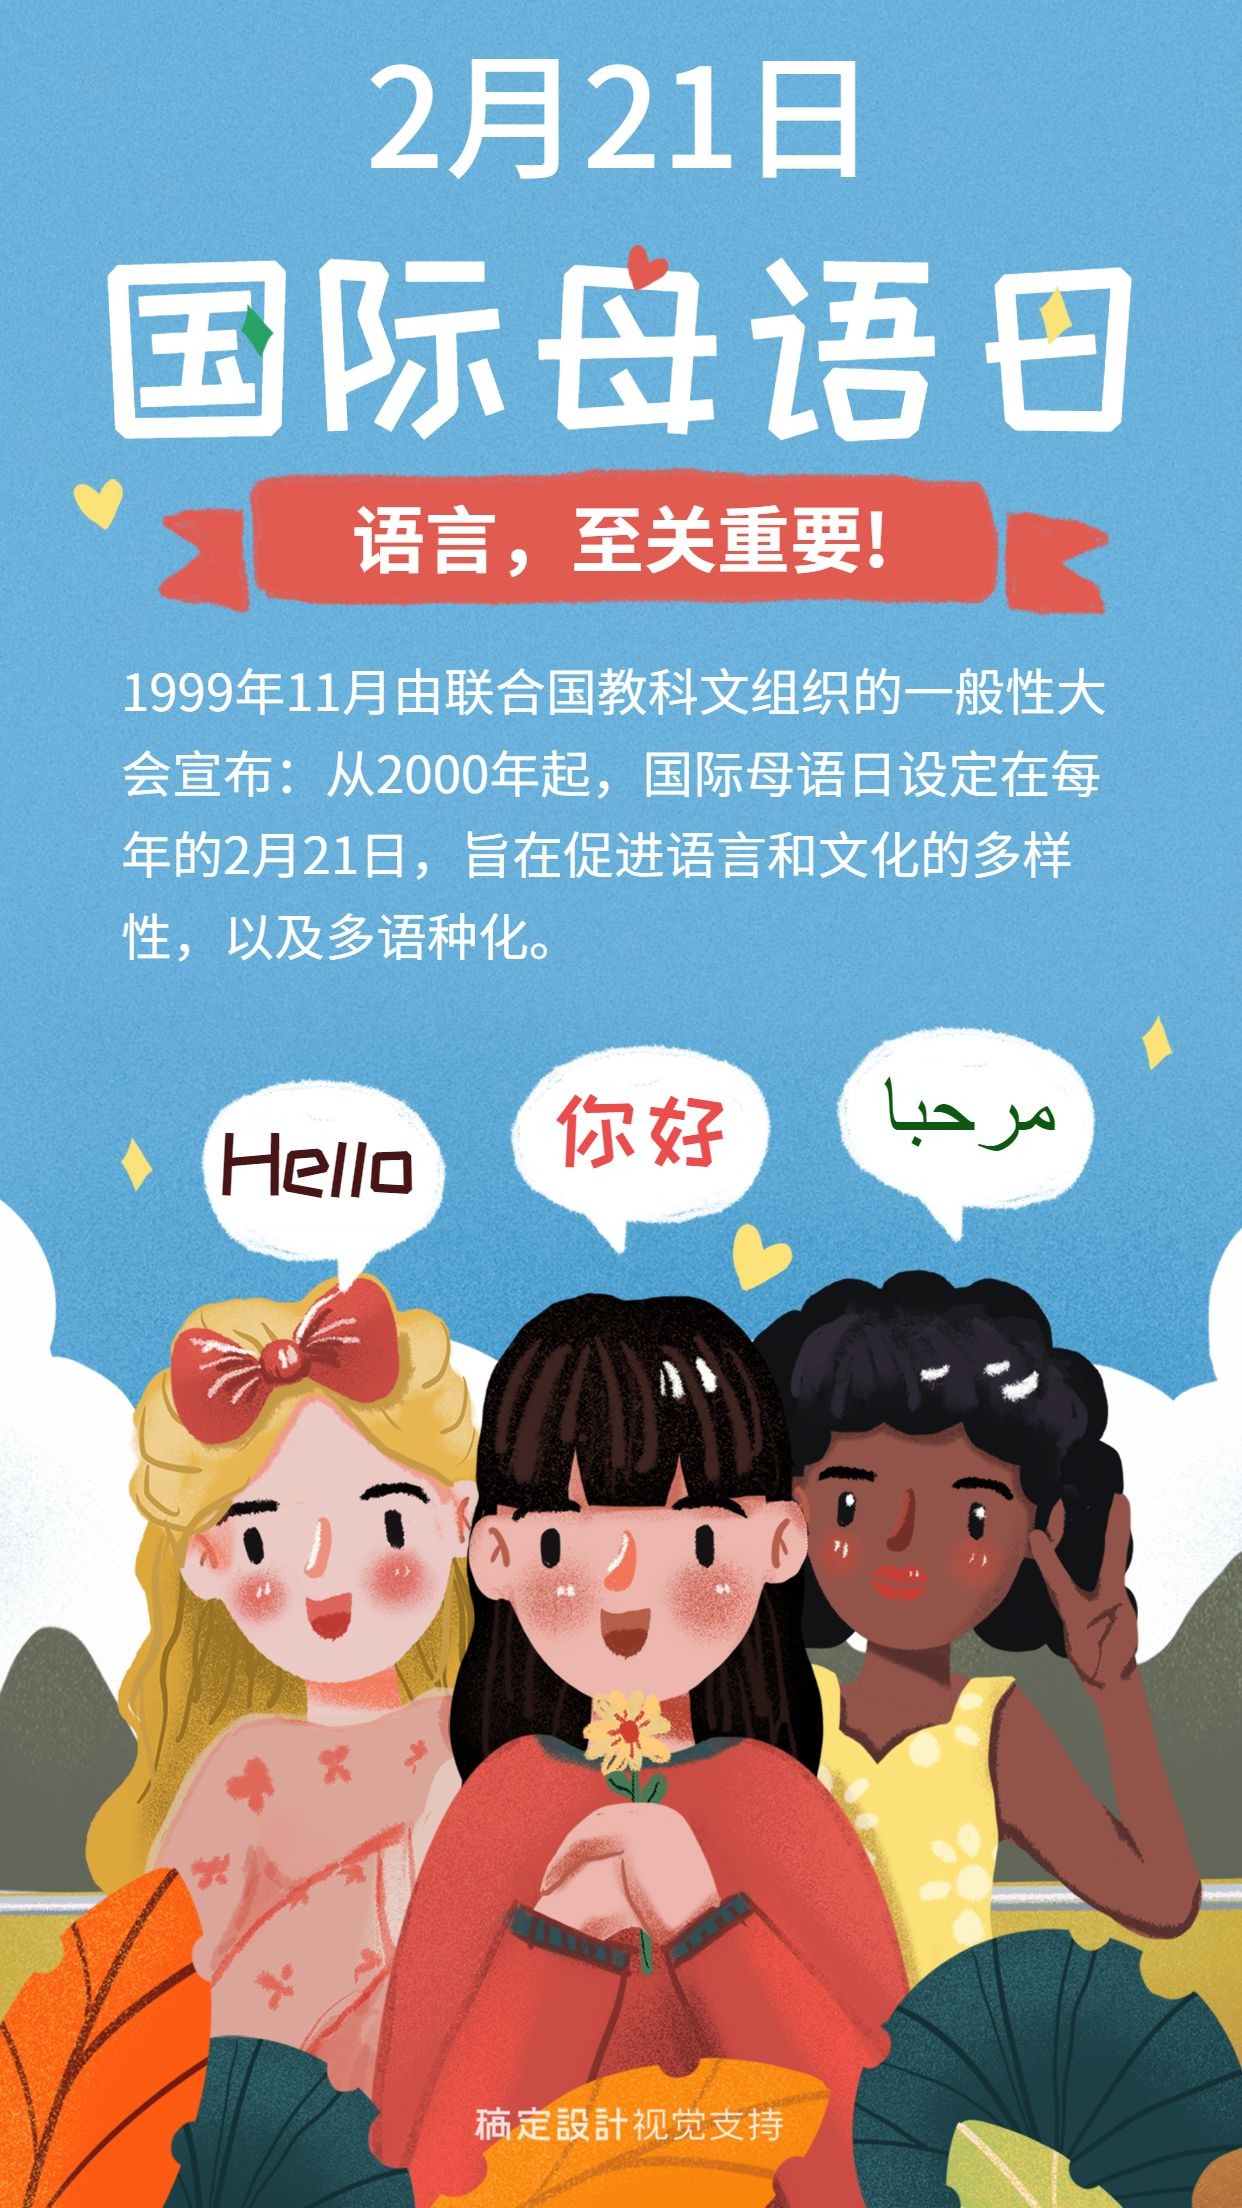 国际母语日文化宣传海报预览效果